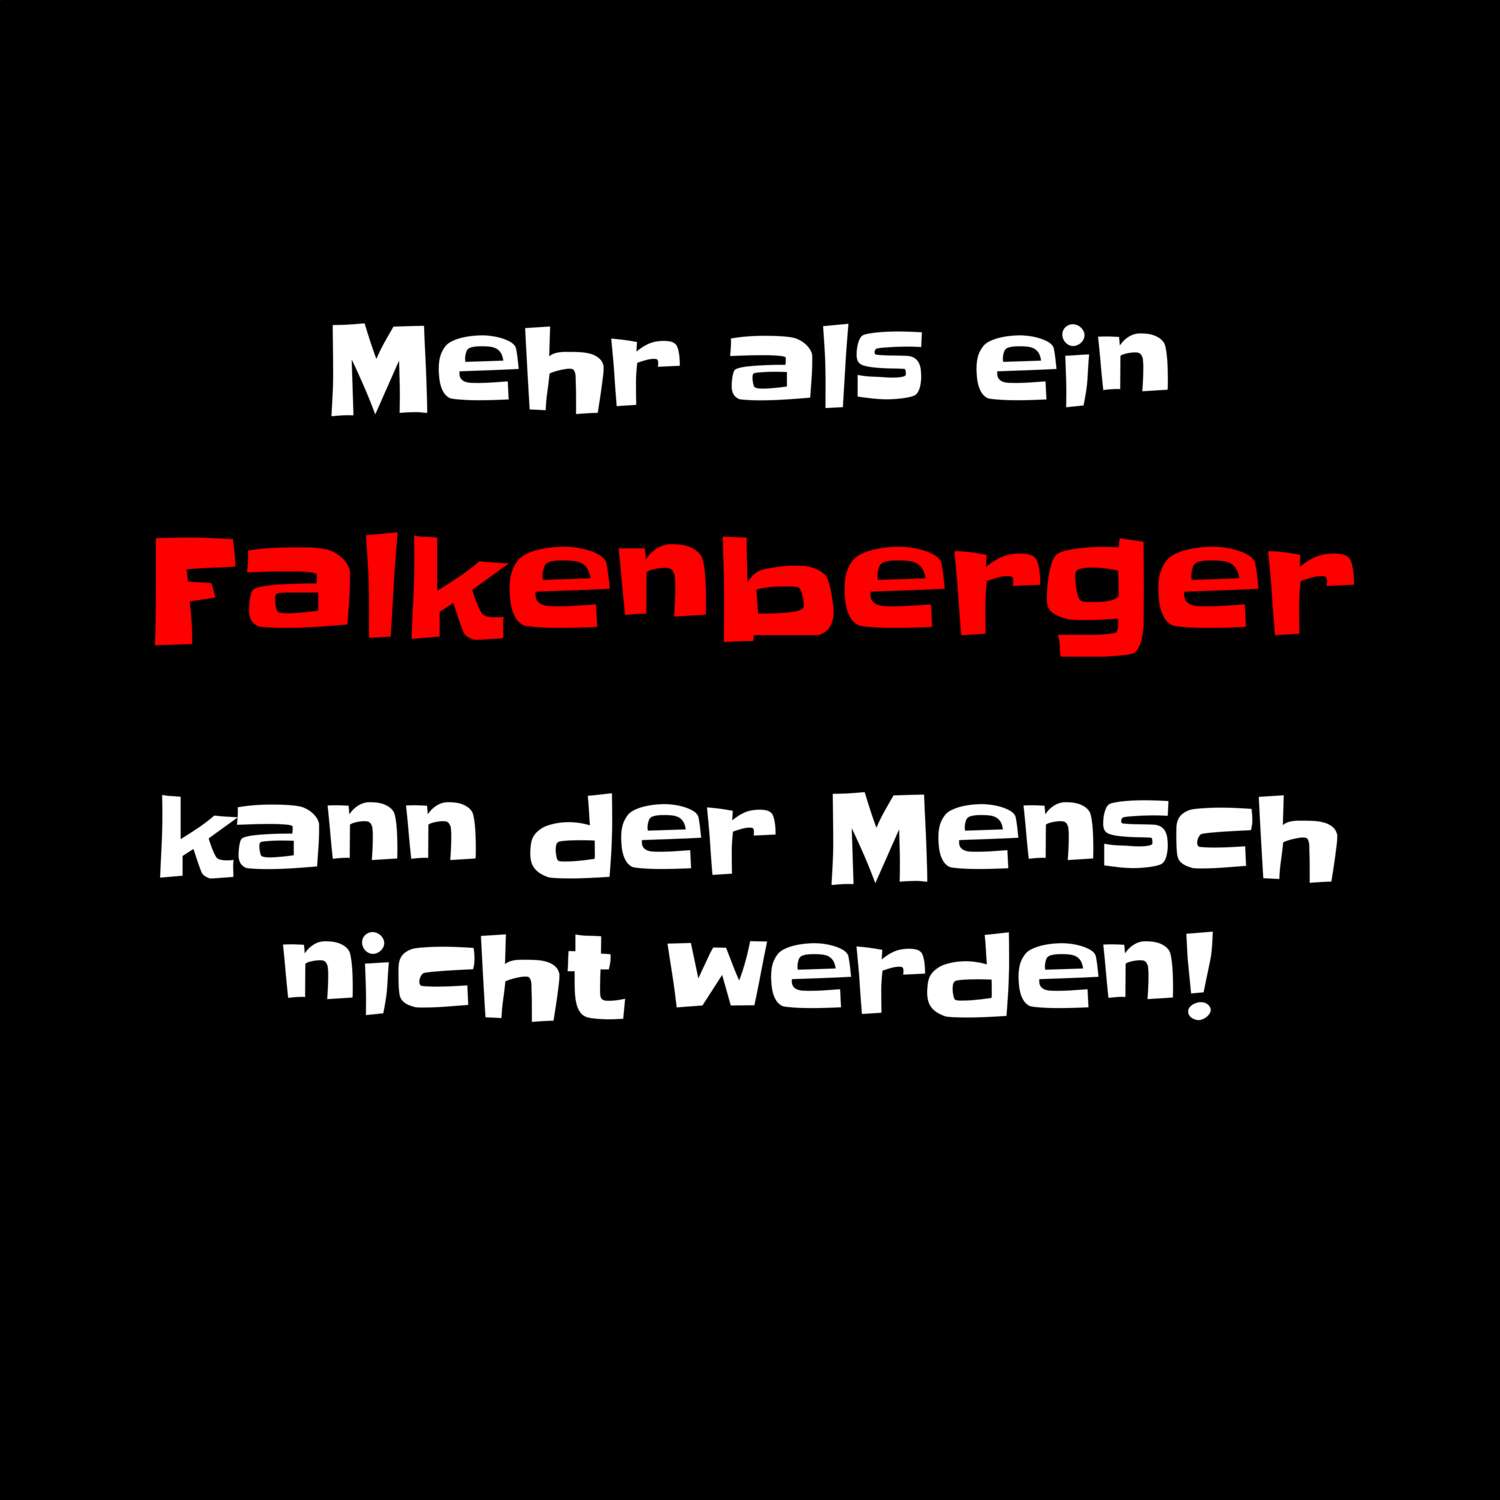 Falkenberg T-Shirt »Mehr als ein«